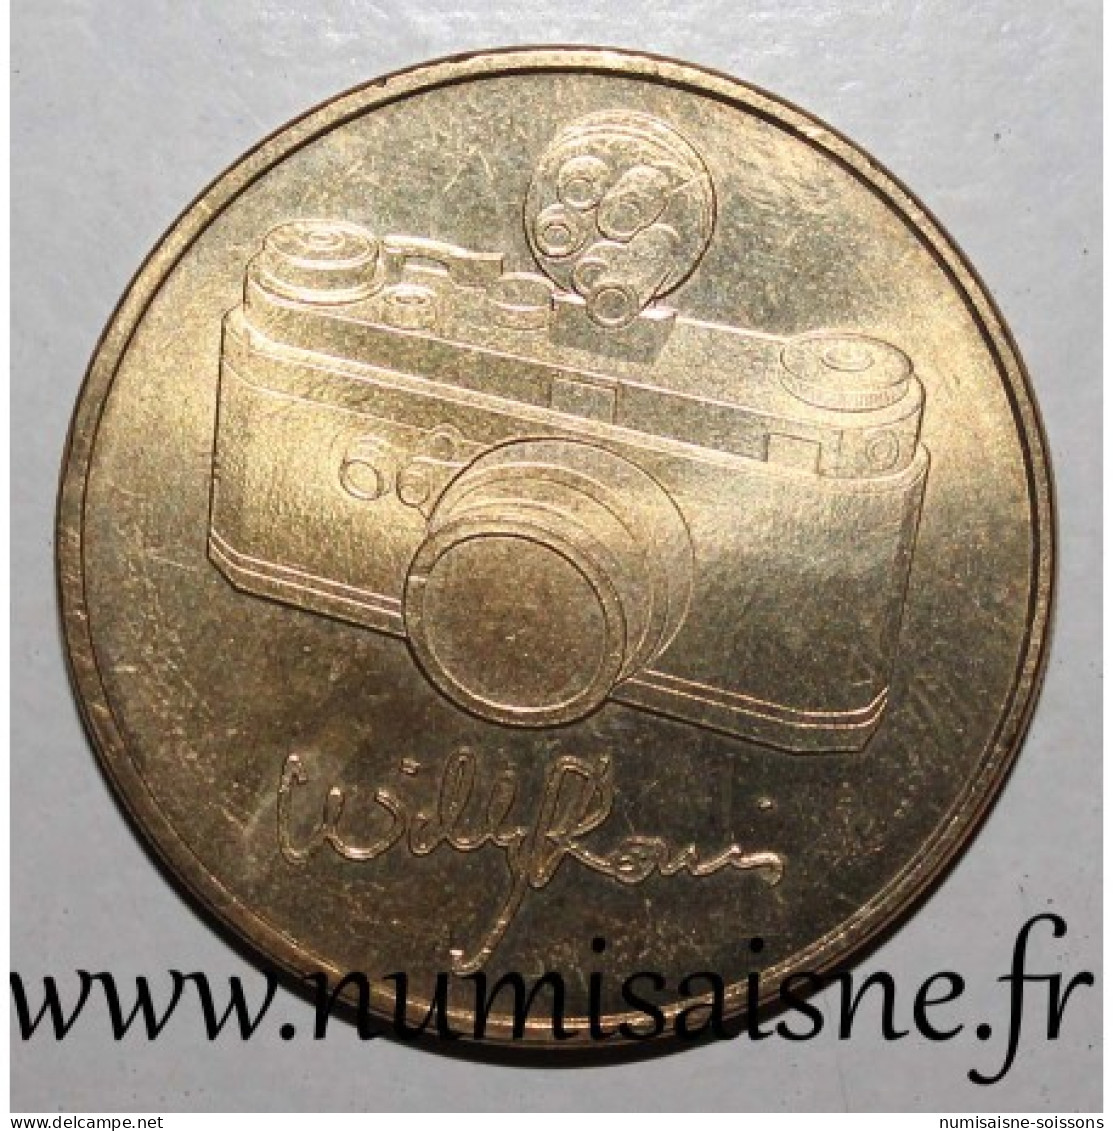 75 - PARIS - EXPOSITION WILLY RONIS - Monnaie De Paris - 2010 - 2010